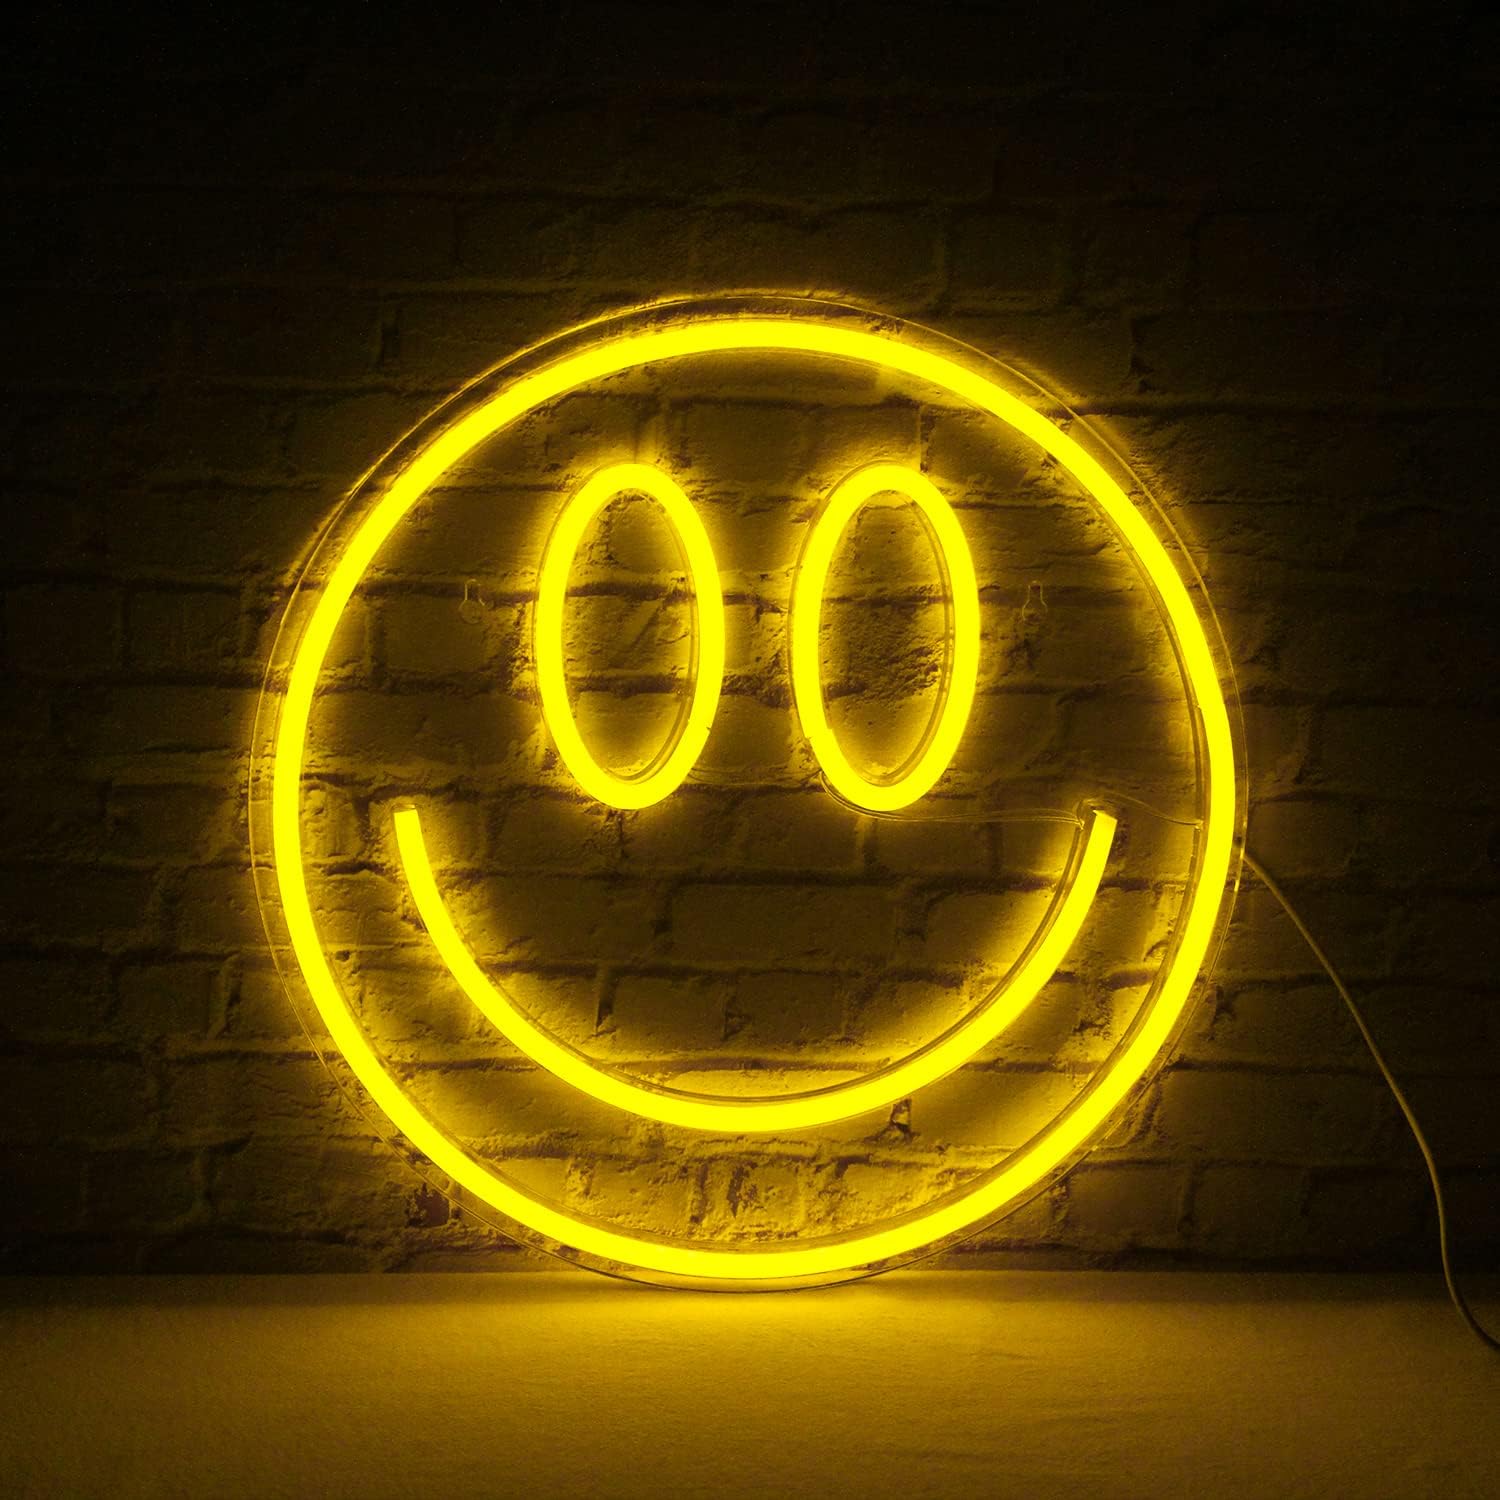 Tanda neon LED Smiley di dinding